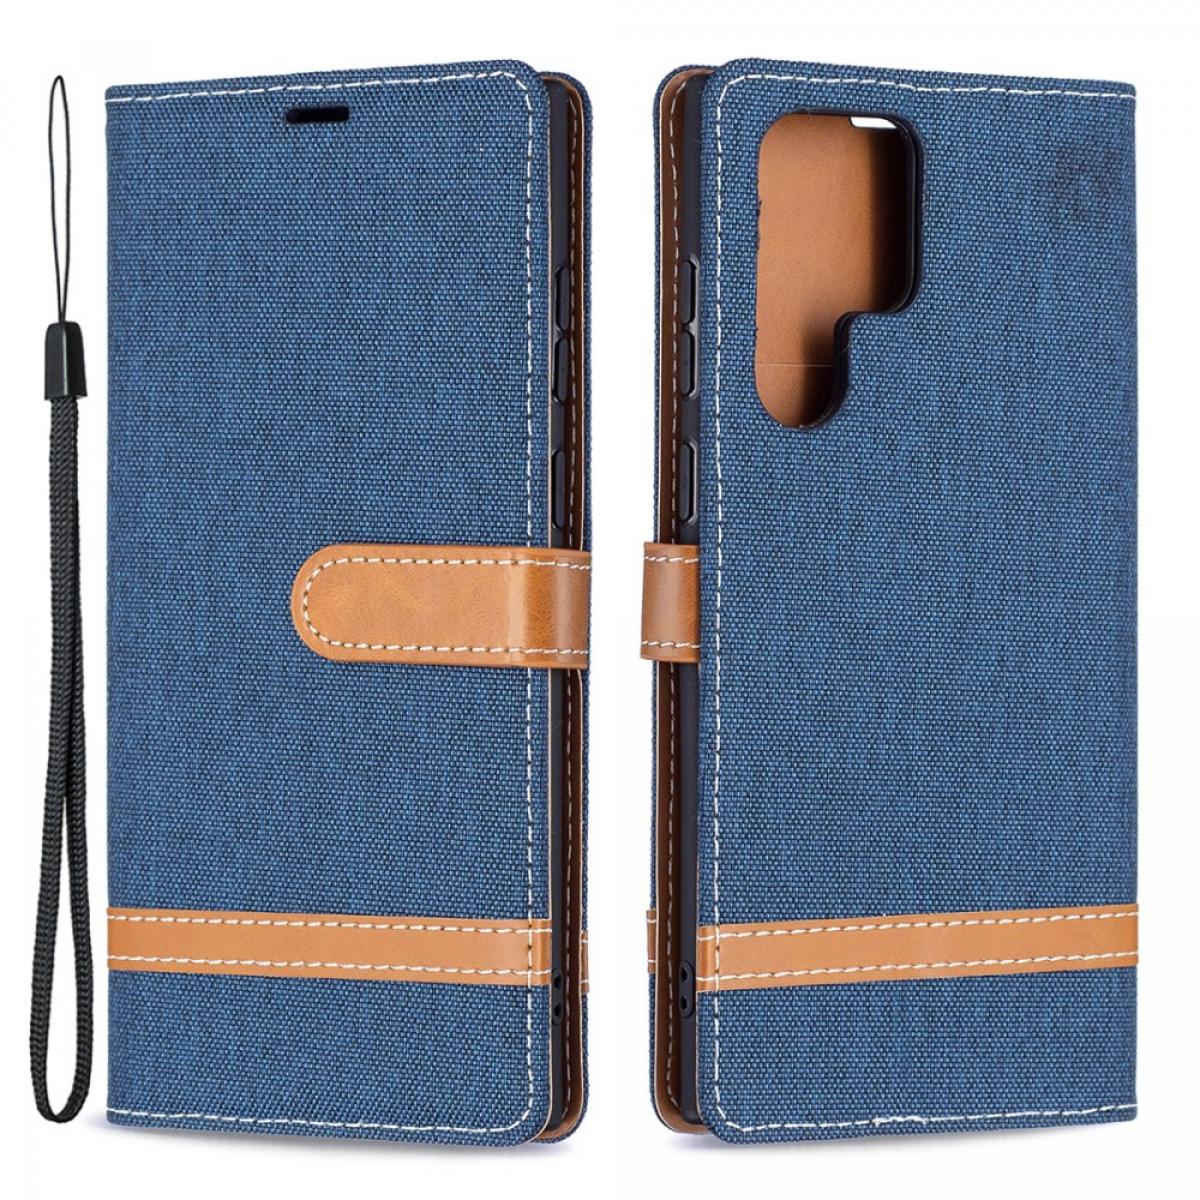 Coque, étui smartphone Other Etui en PU texture de jeans, fermoir magnétique bleu marine pour votre Samsung Galaxy S22 Ultra